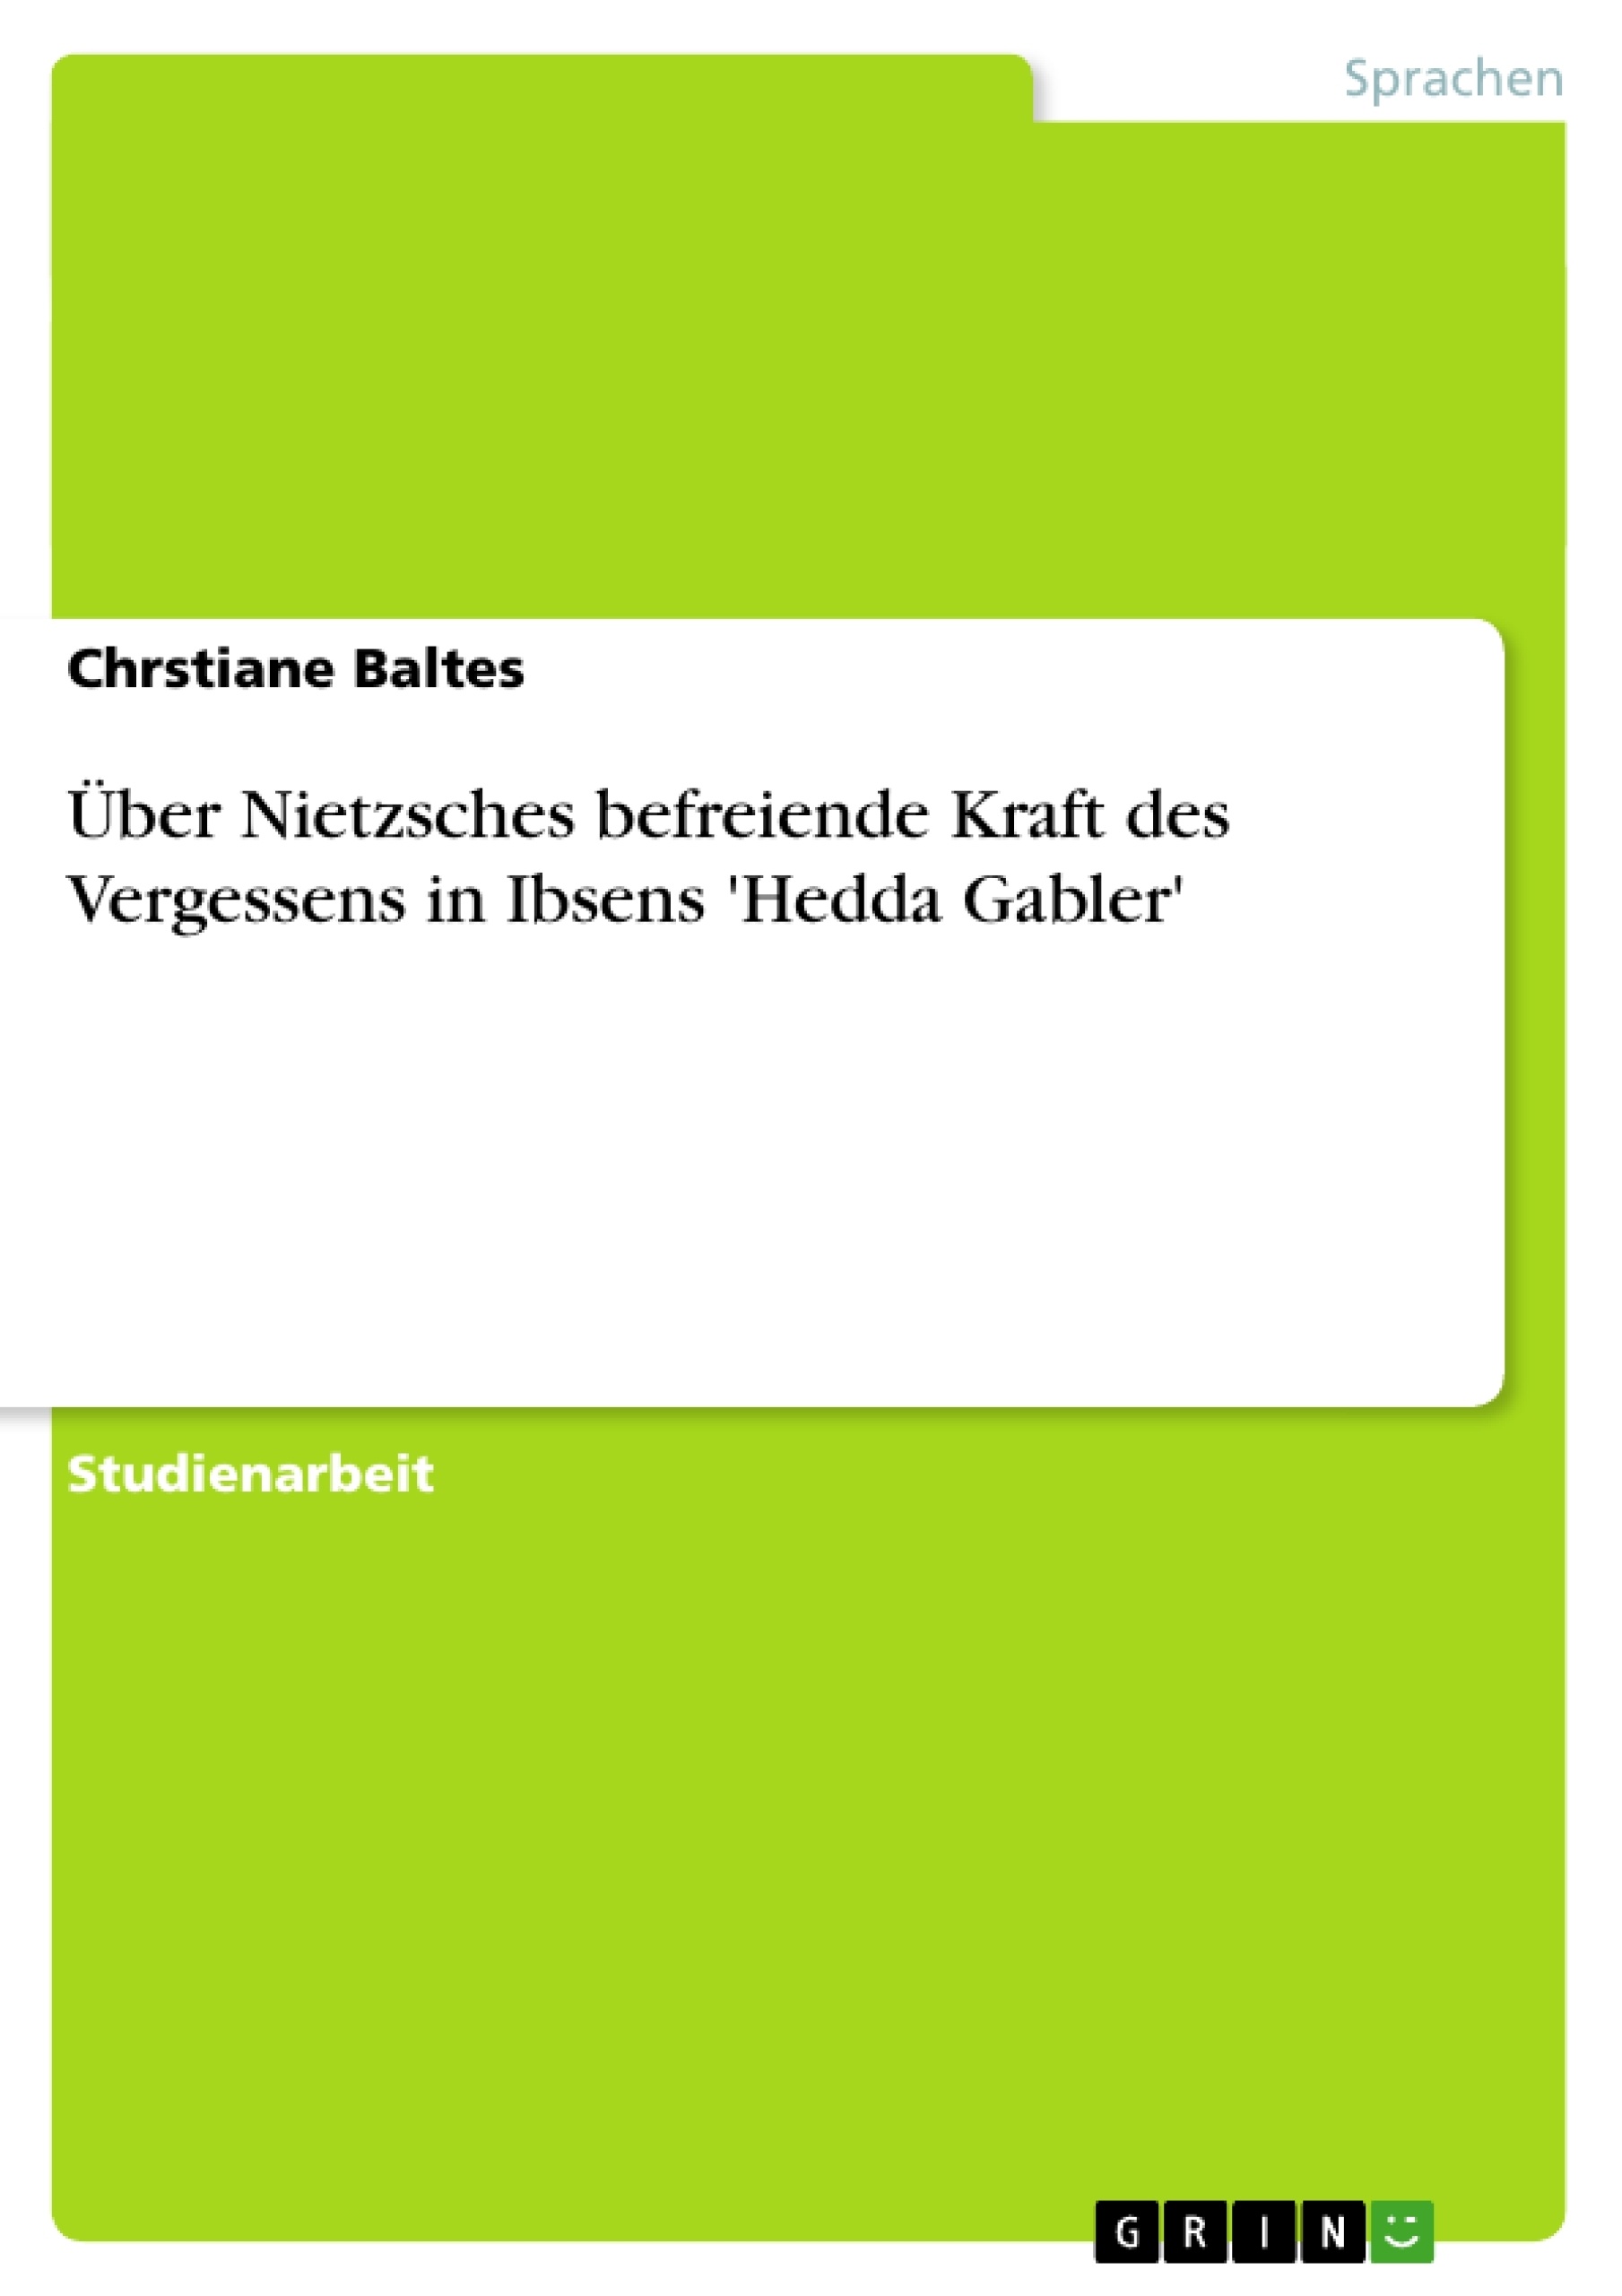 Titre: Über Nietzsches befreiende Kraft des Vergessens in Ibsens 'Hedda Gabler'